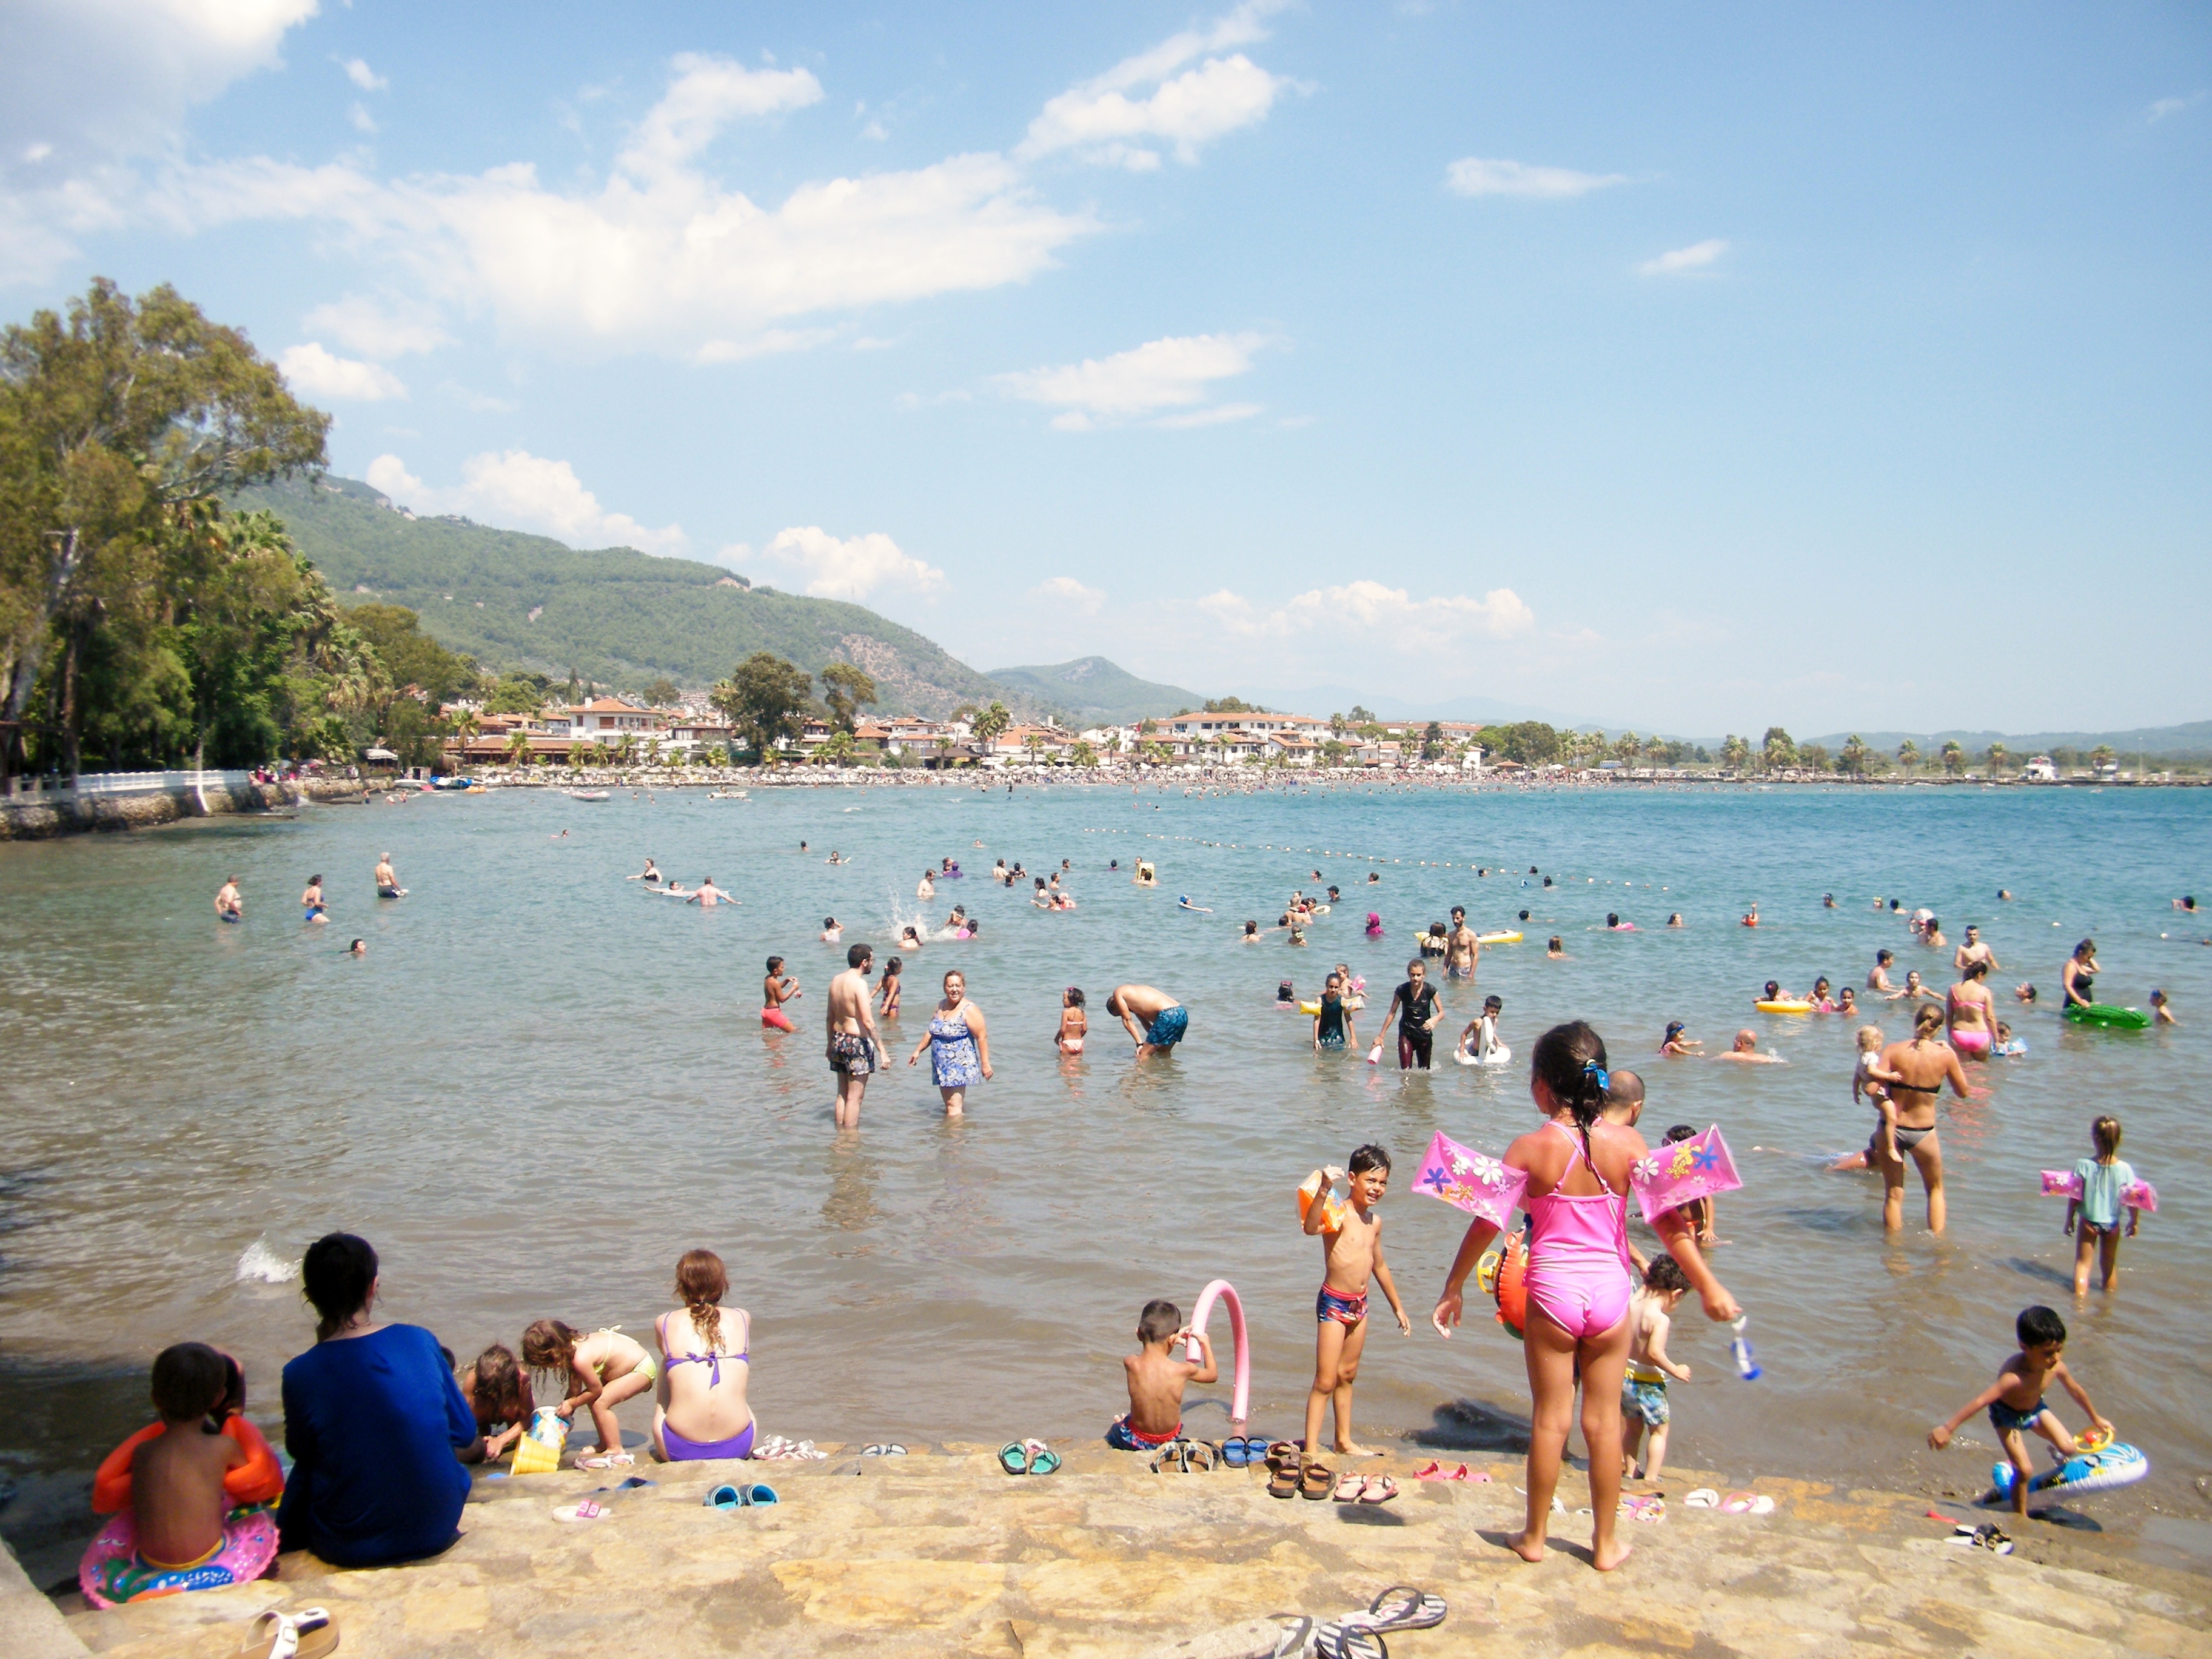 Personas se bañan en uno de los extremos de la playa en Akyaka en el Egeo turco / J.M Akyaka Egeo turco 